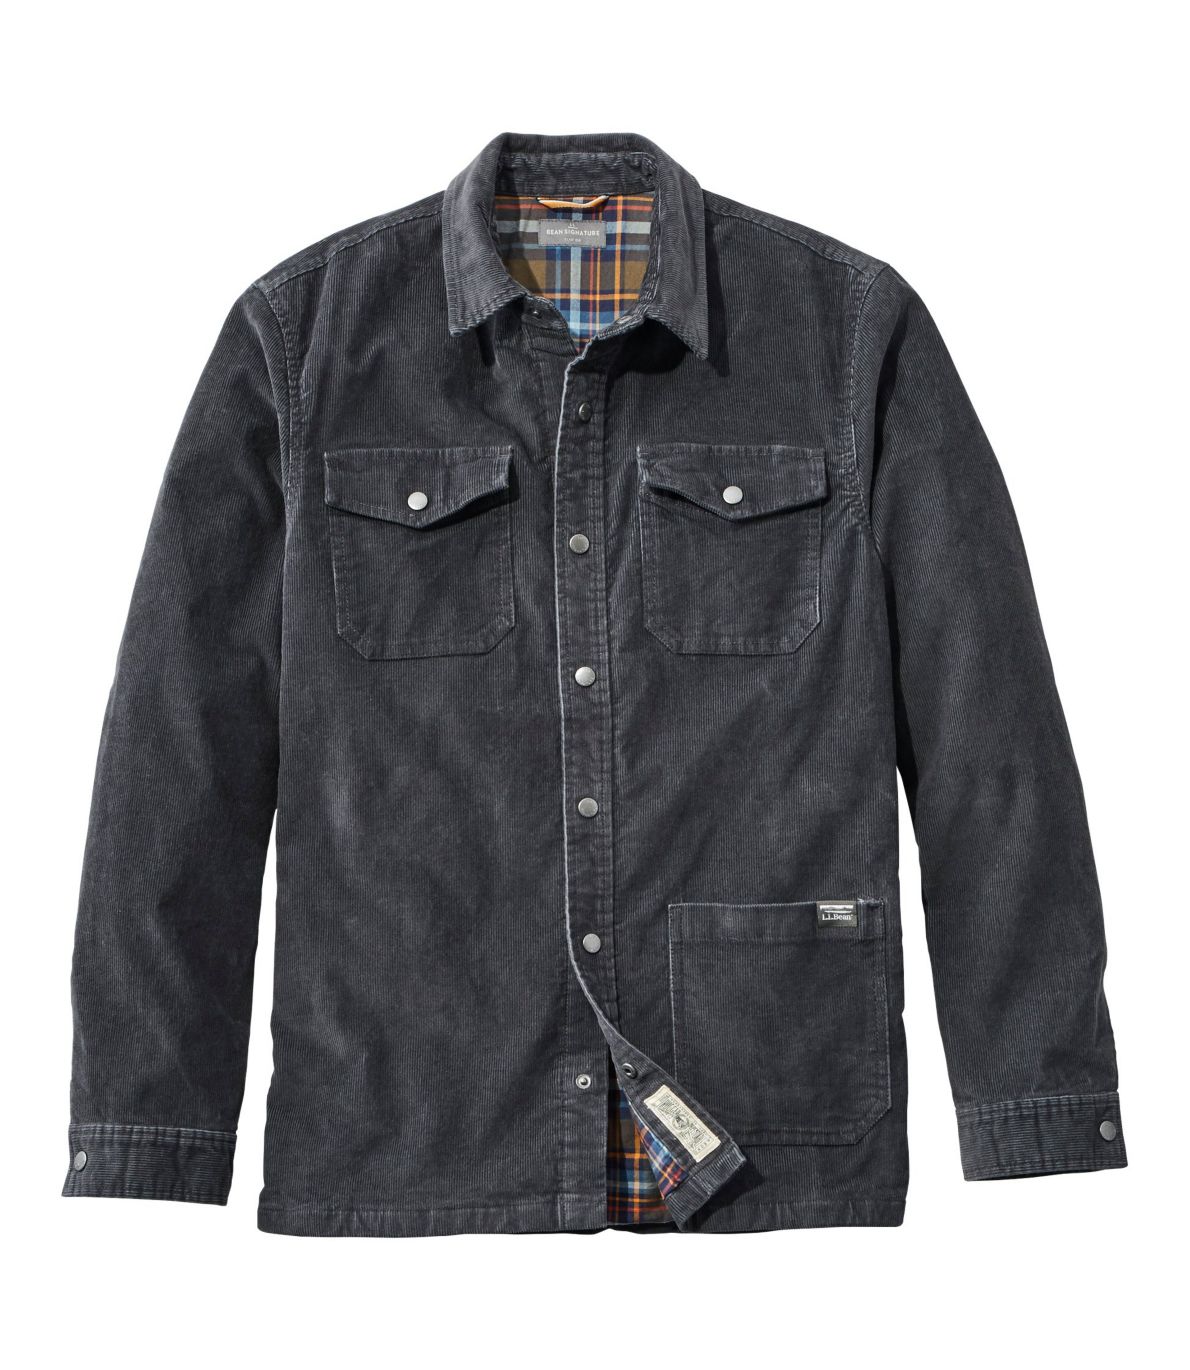 Men's Signature Corduroy Shirt Jac, Flannel-Lined